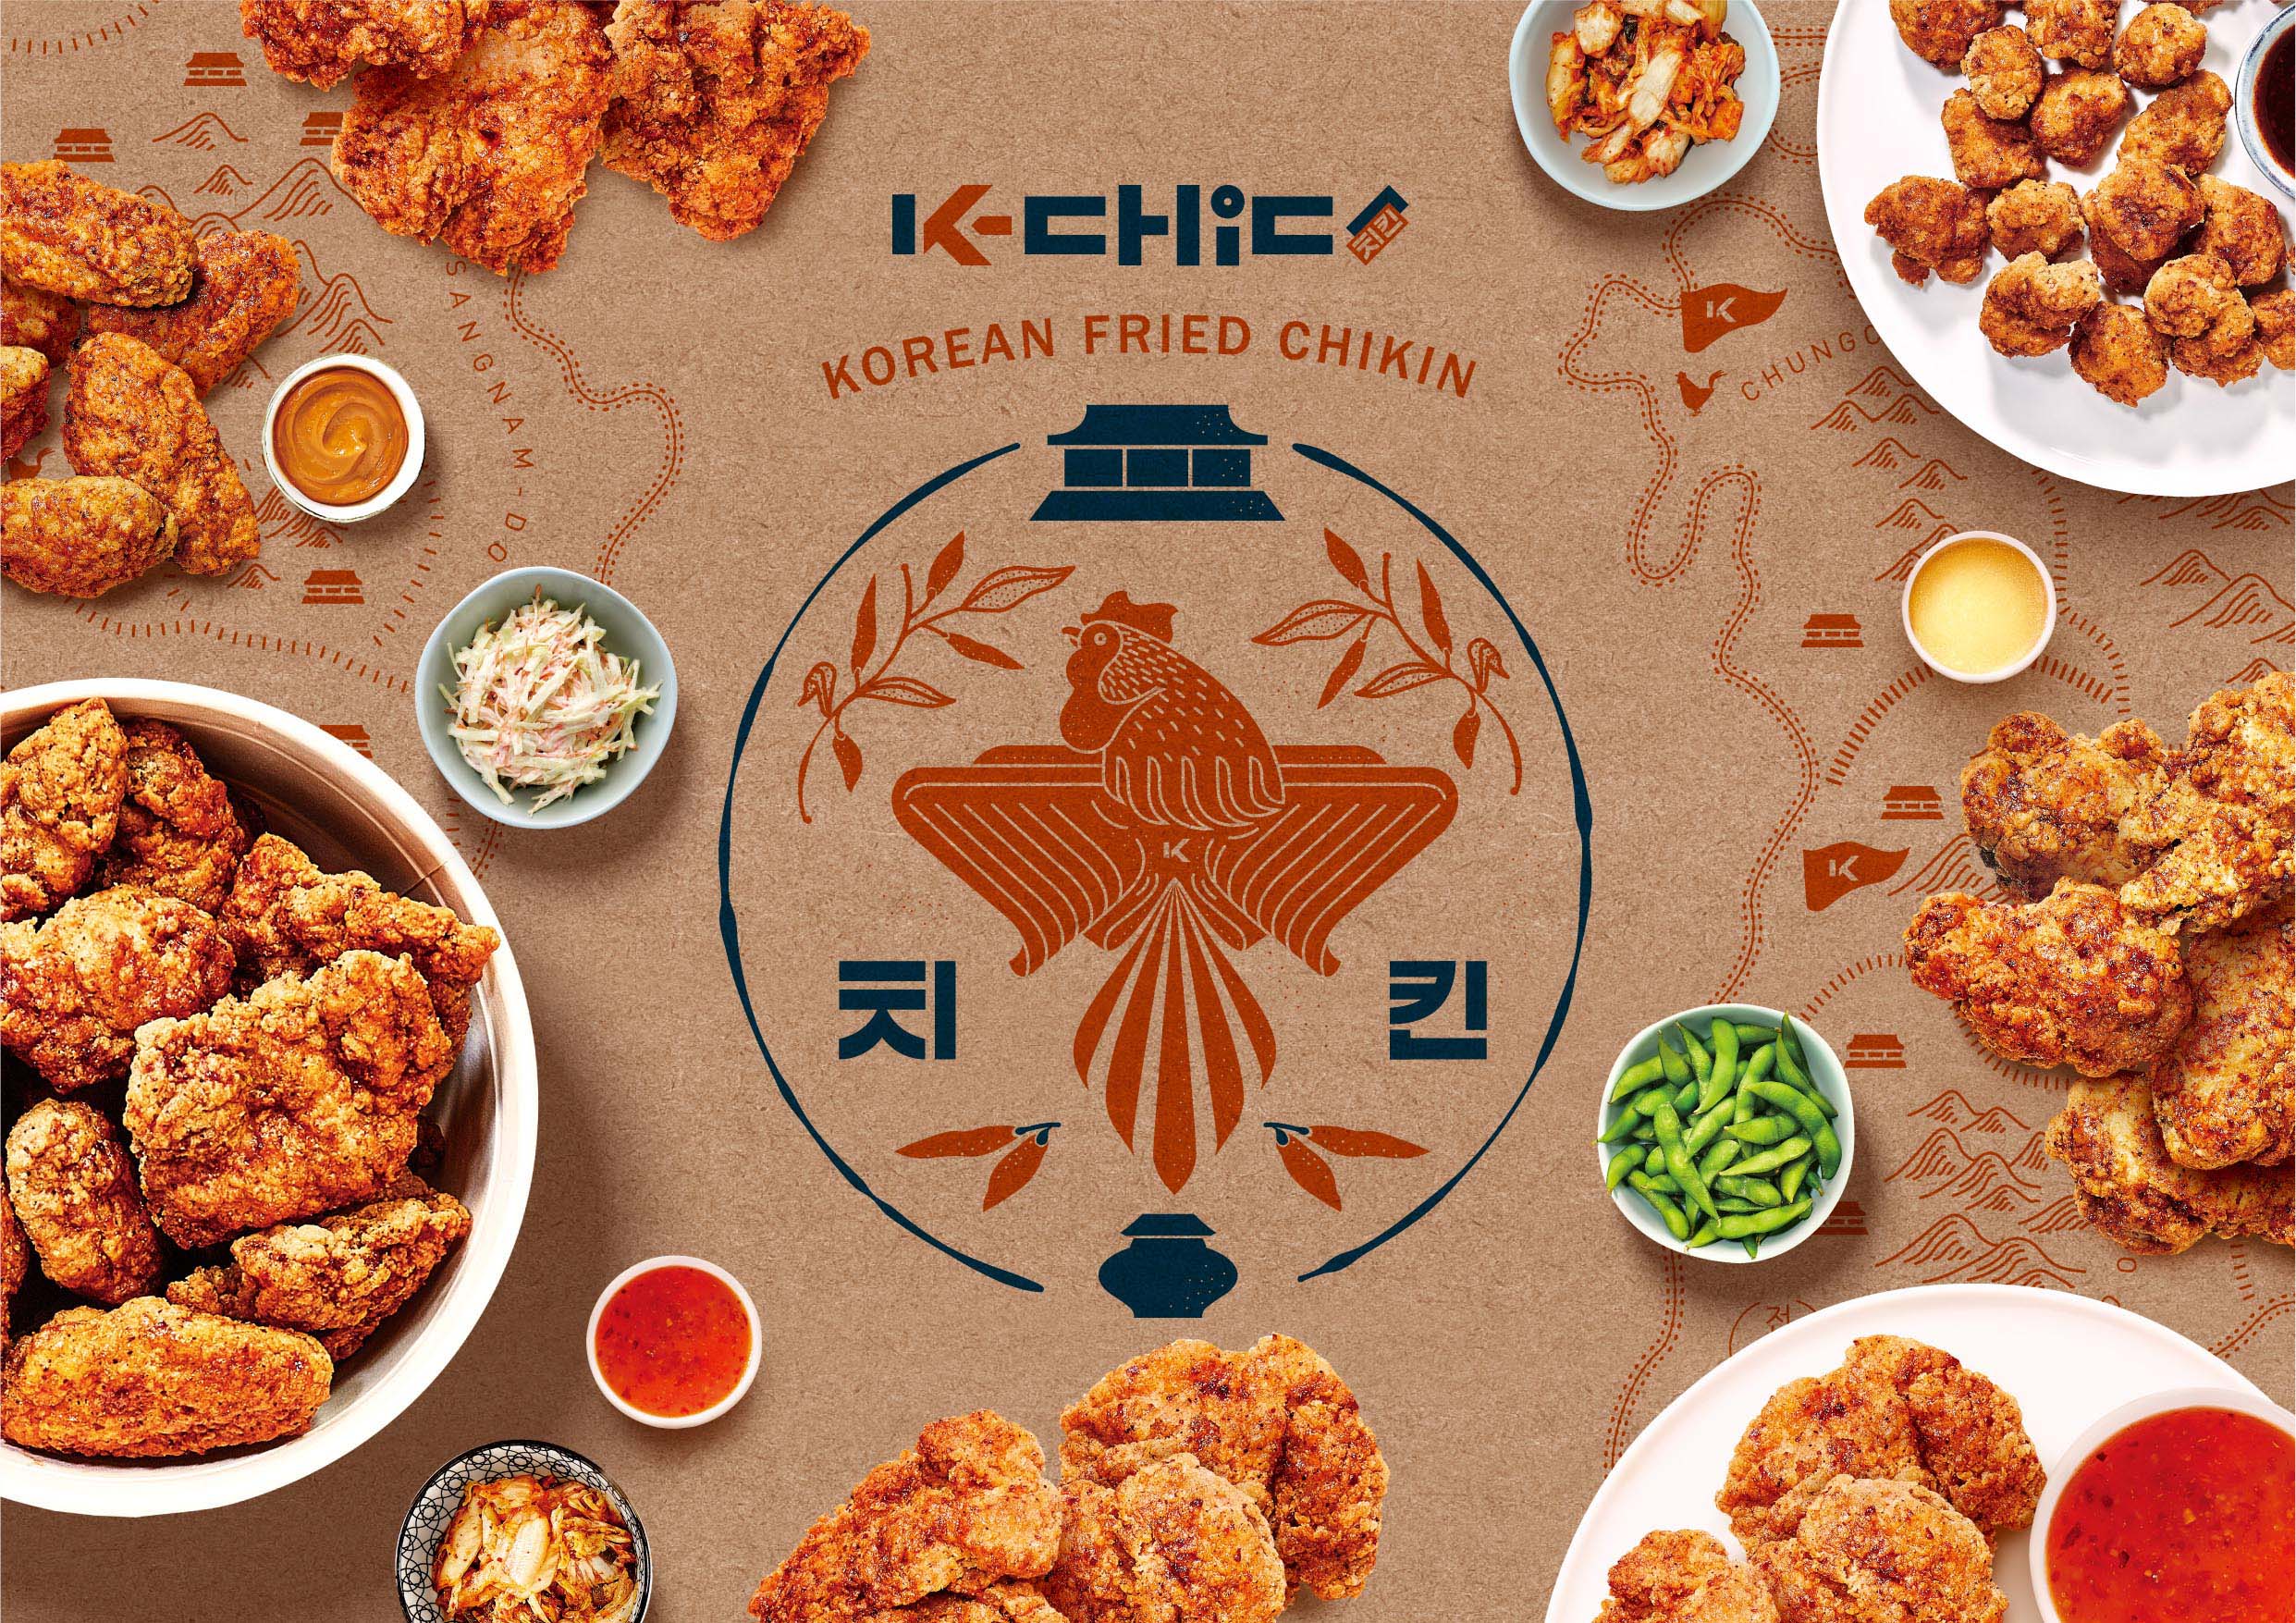 K-Chic韩国炸鸡品牌设计